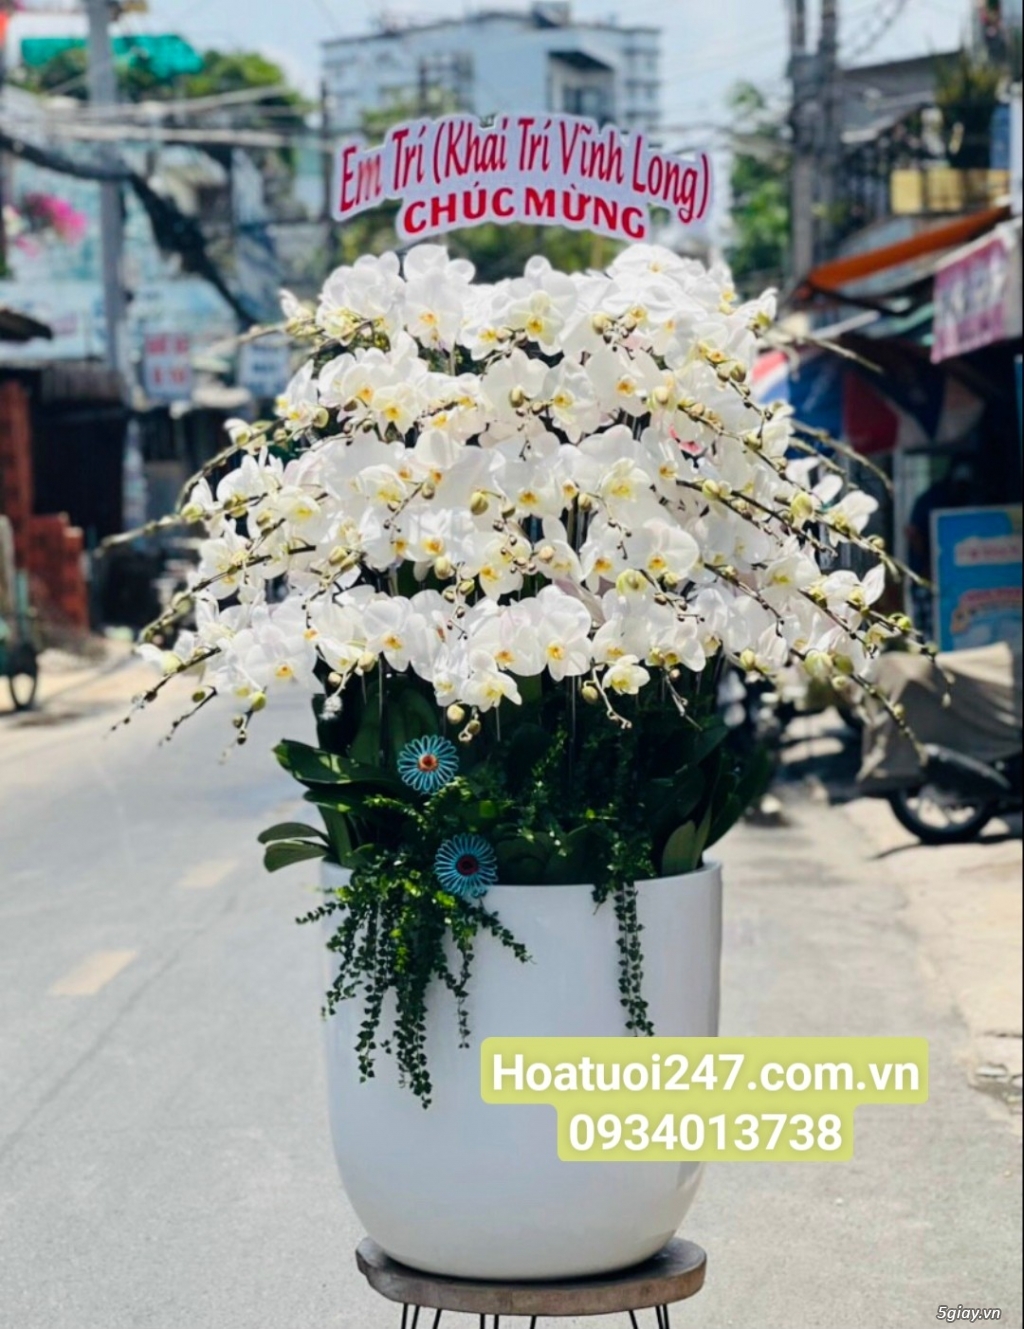 Shop hoa tươi lan hồ điệp quận Tân Bình tphcm 0934013738 - 3